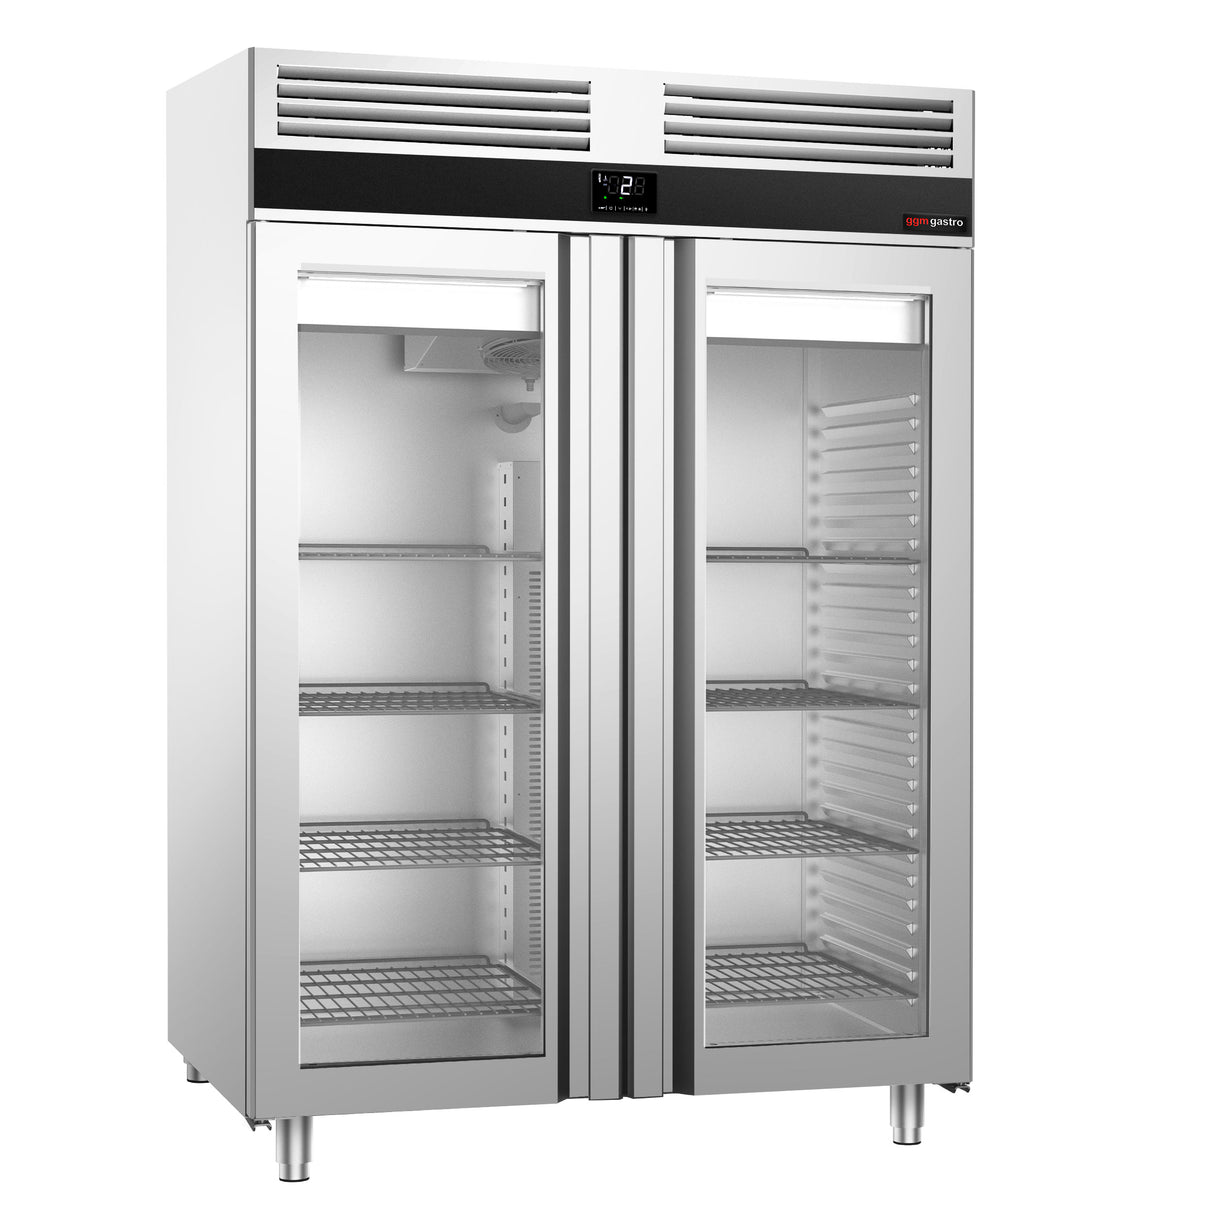 Køleskab - 1,41 x 0,81 m - 1400 liter - med 2 glasdører